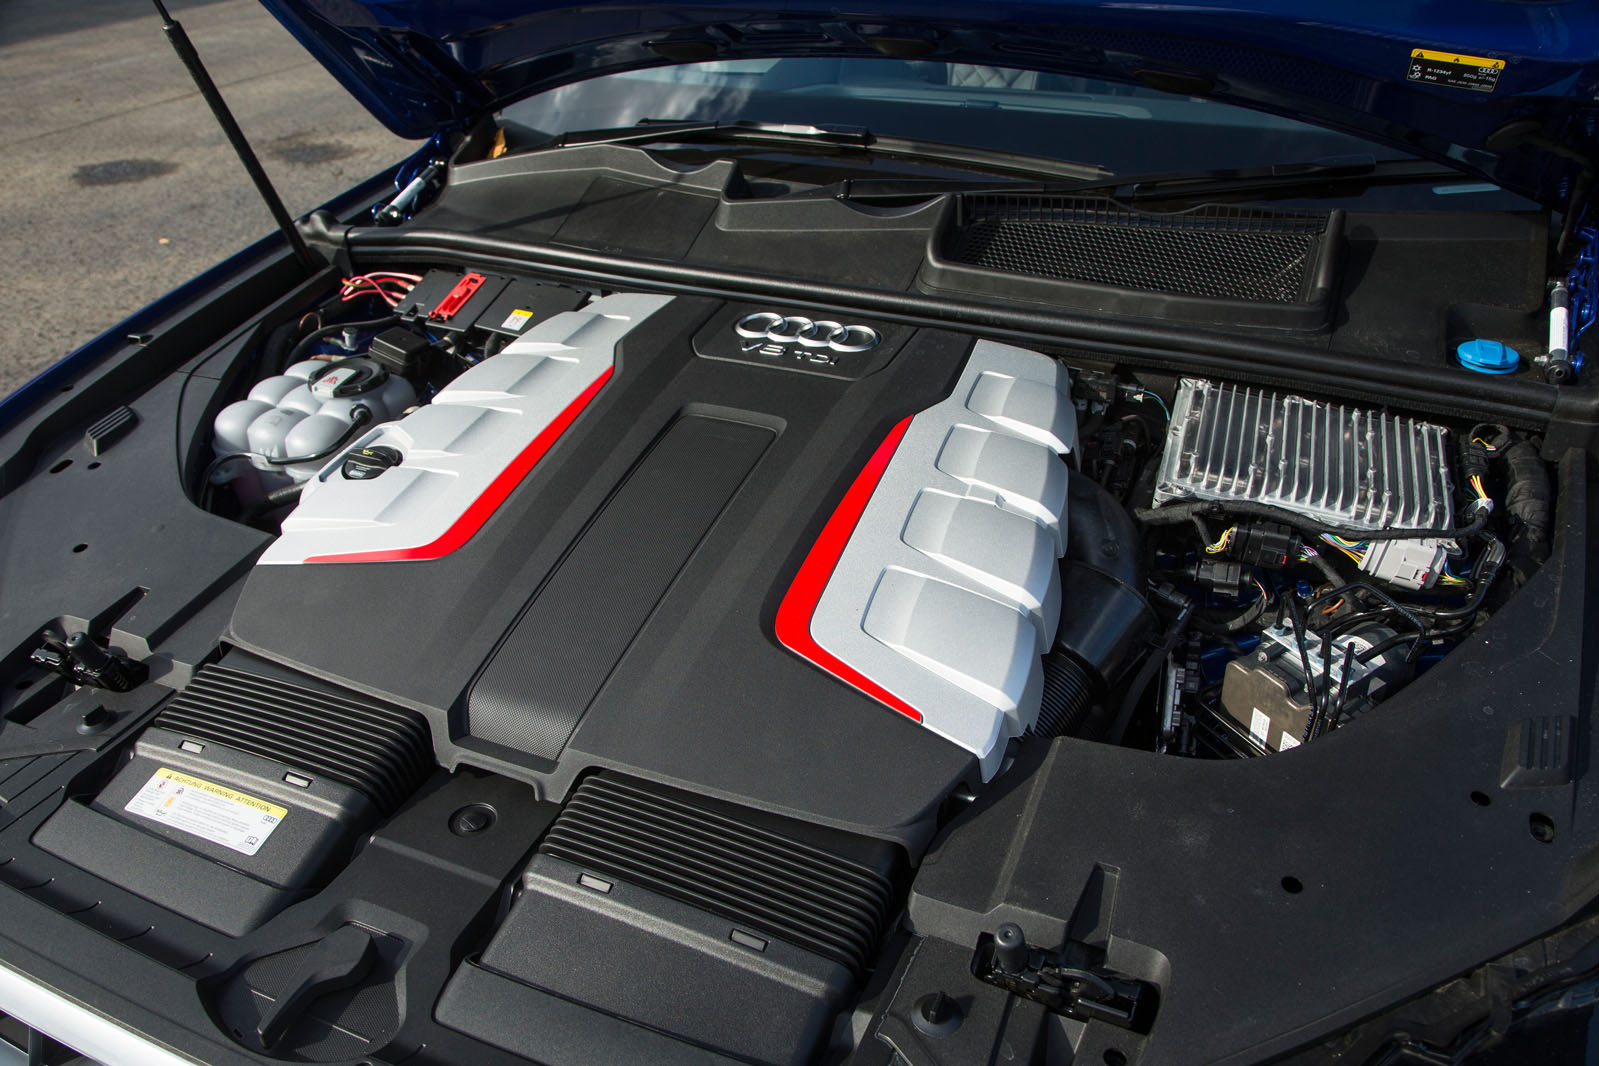 4.0-litre V8 Audi SQ7 diesel engine